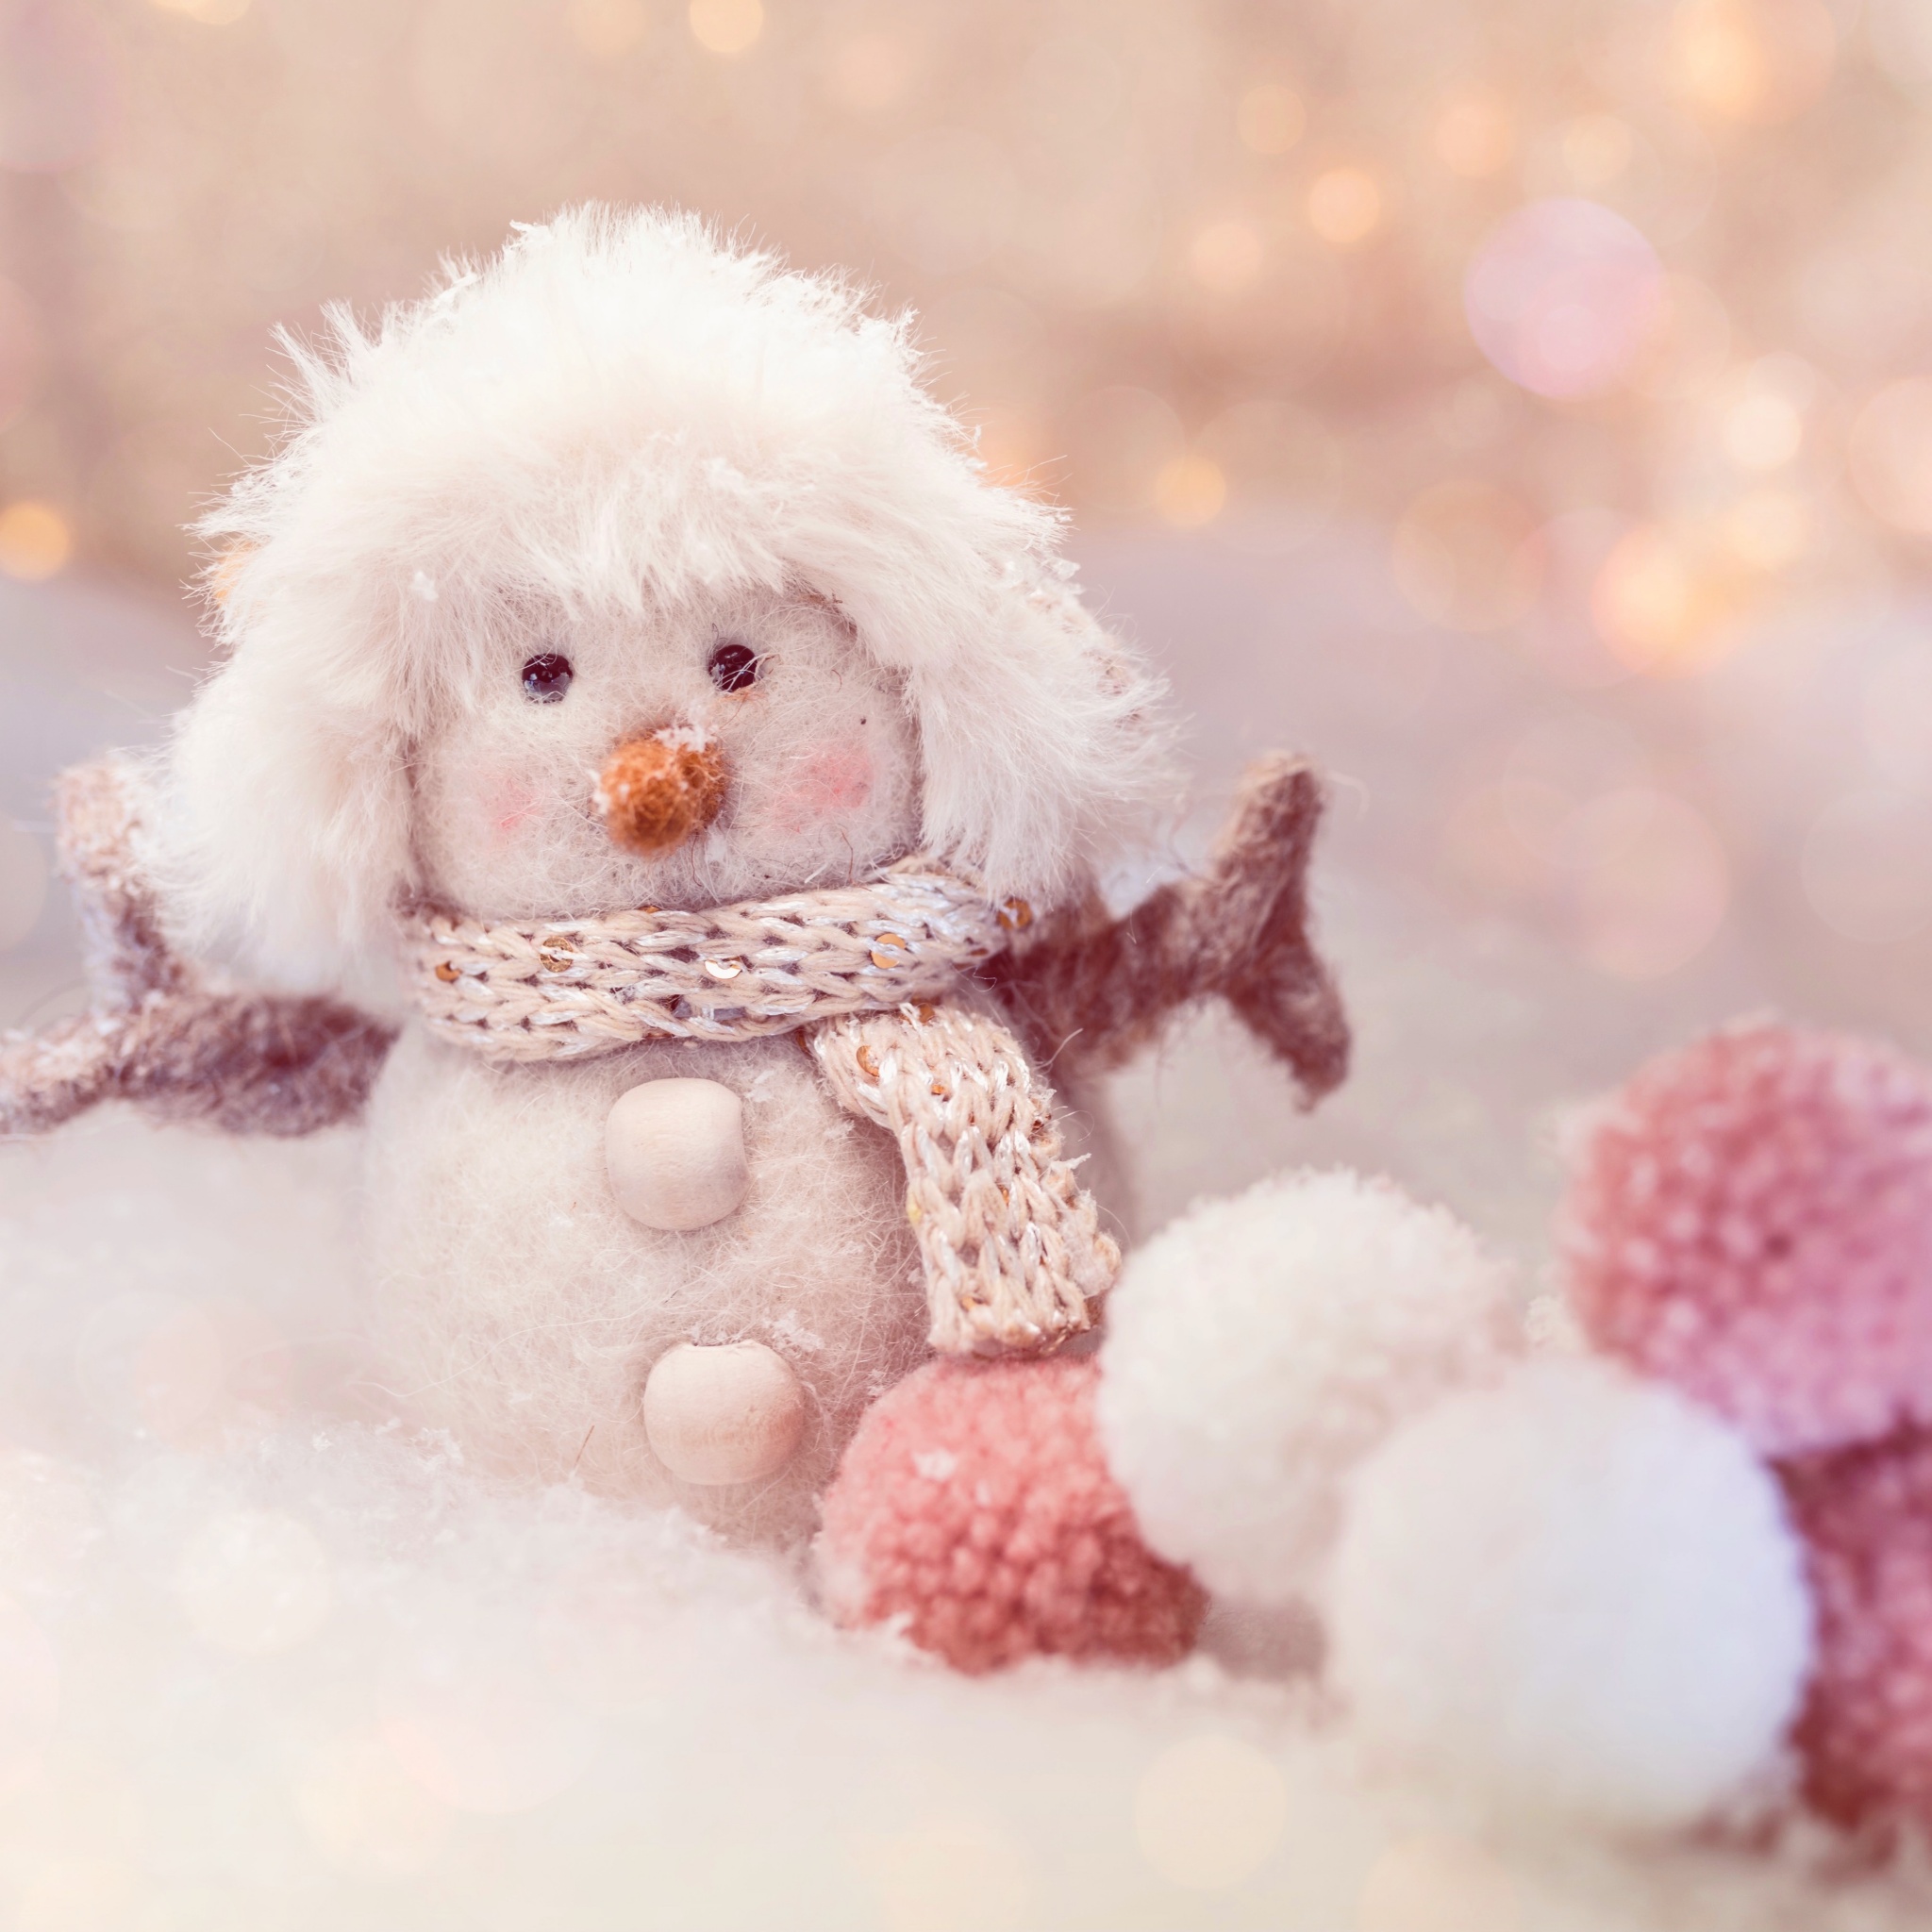 Snowman Wallpaper 4K, Cute doll, Plush toys, Cute